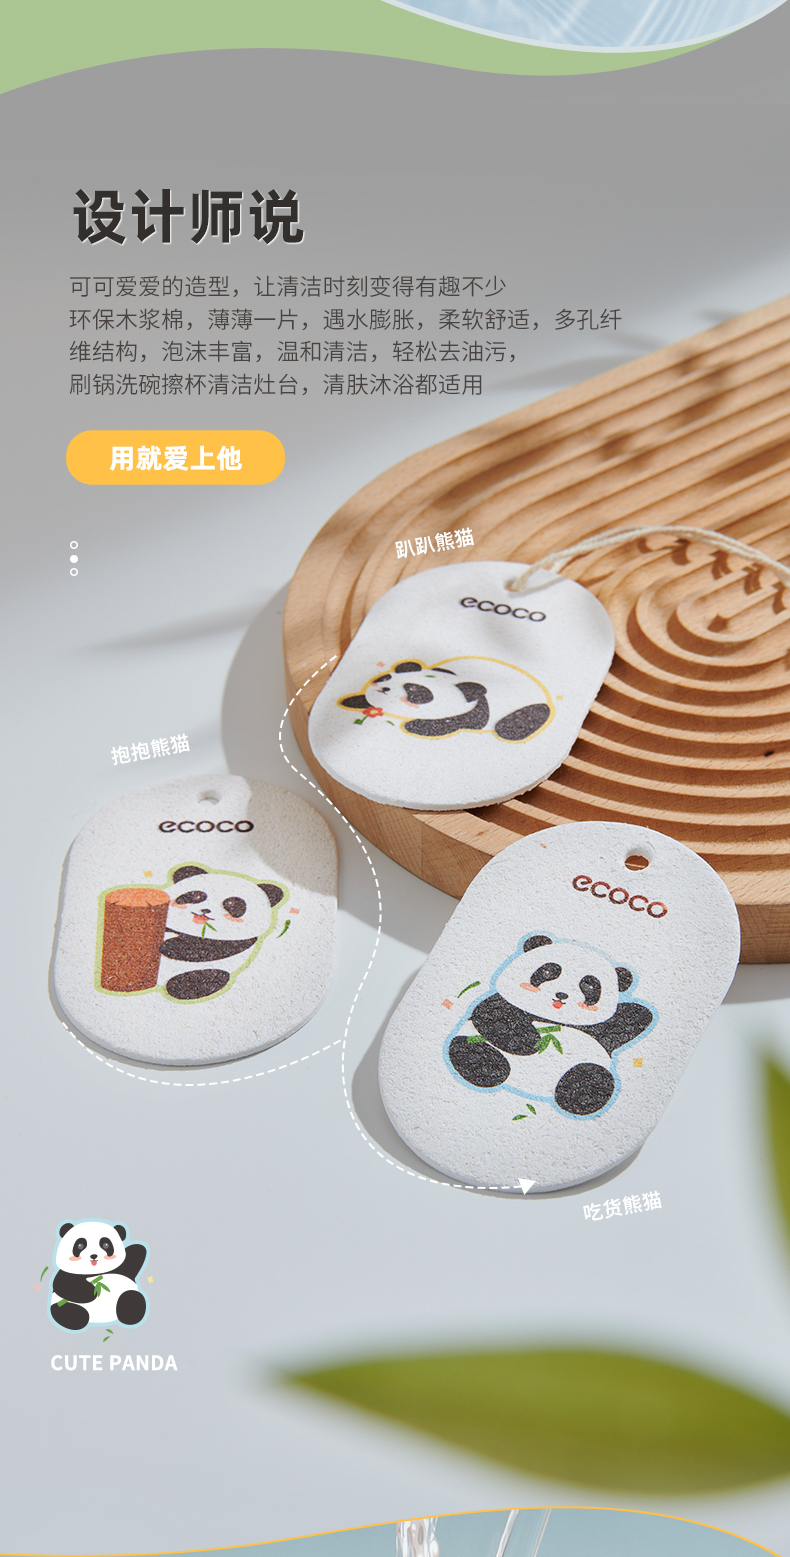 熊猫洗碗棉详情_02.jpg